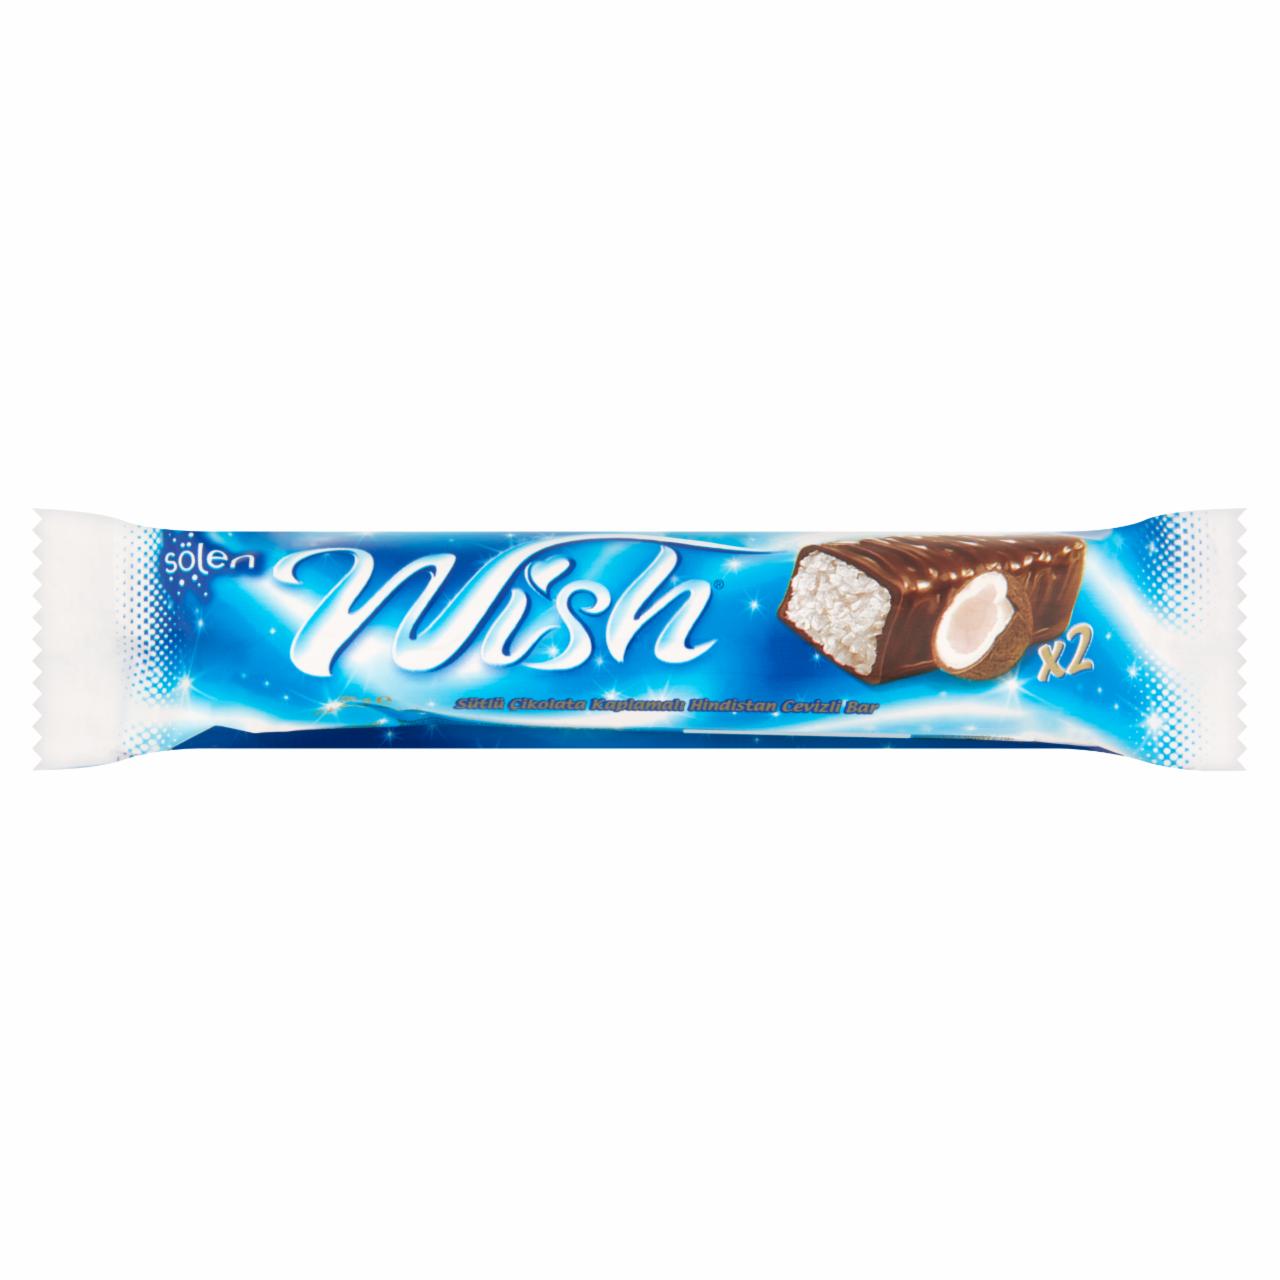 Képek - Sölen Wish tejcsokoládéval bevont kókuszos szelet 2 db 36 g